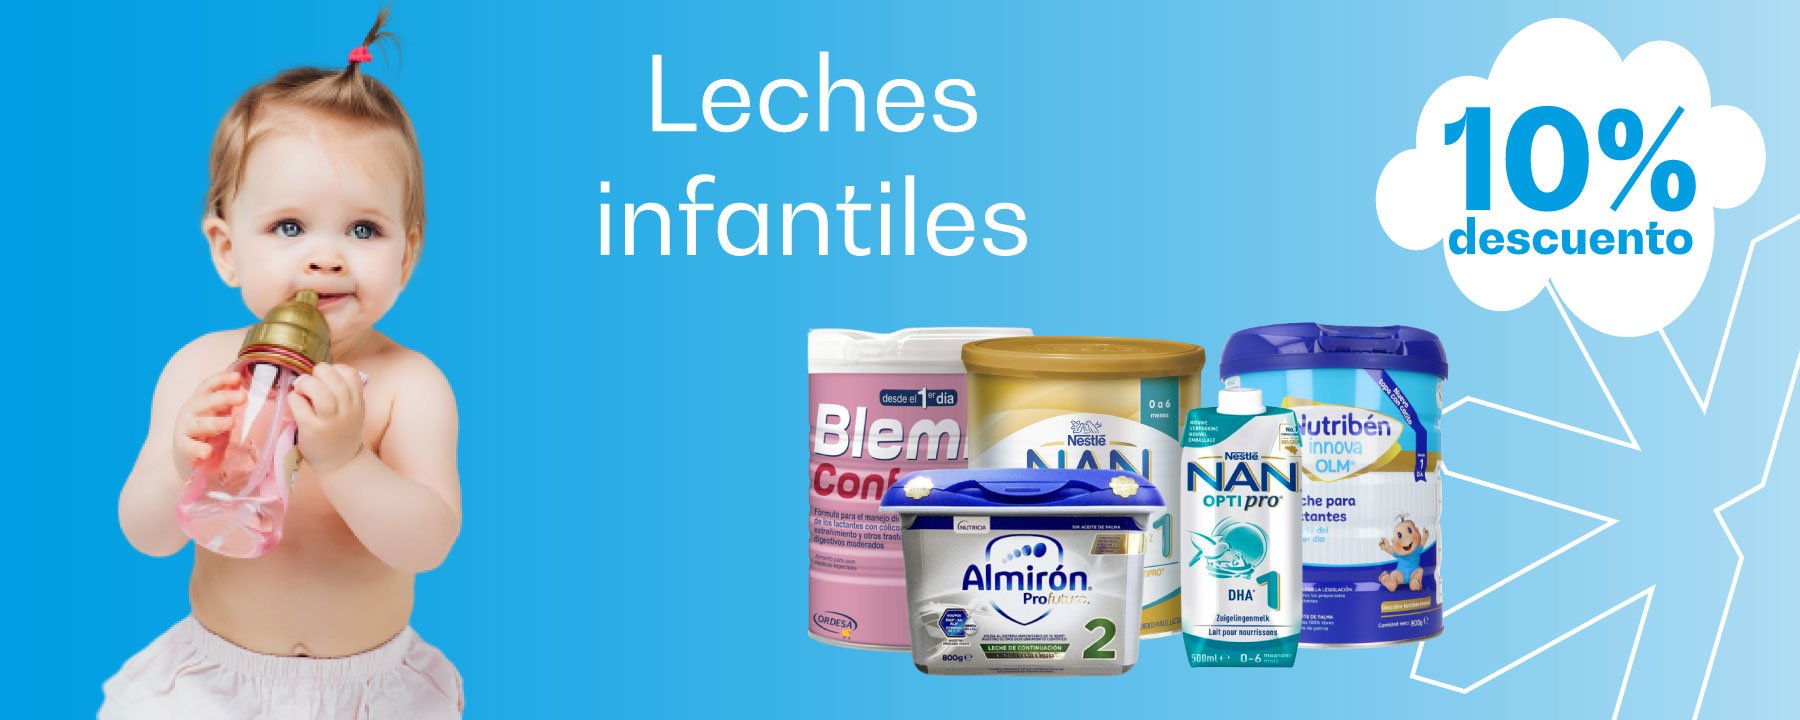 Nestlé Nidina 1 Leche para Lactantes en Polvo, Fórmula para Bebés Desde El  Primer Día, Bote de 800g : : Alimentación y bebidas